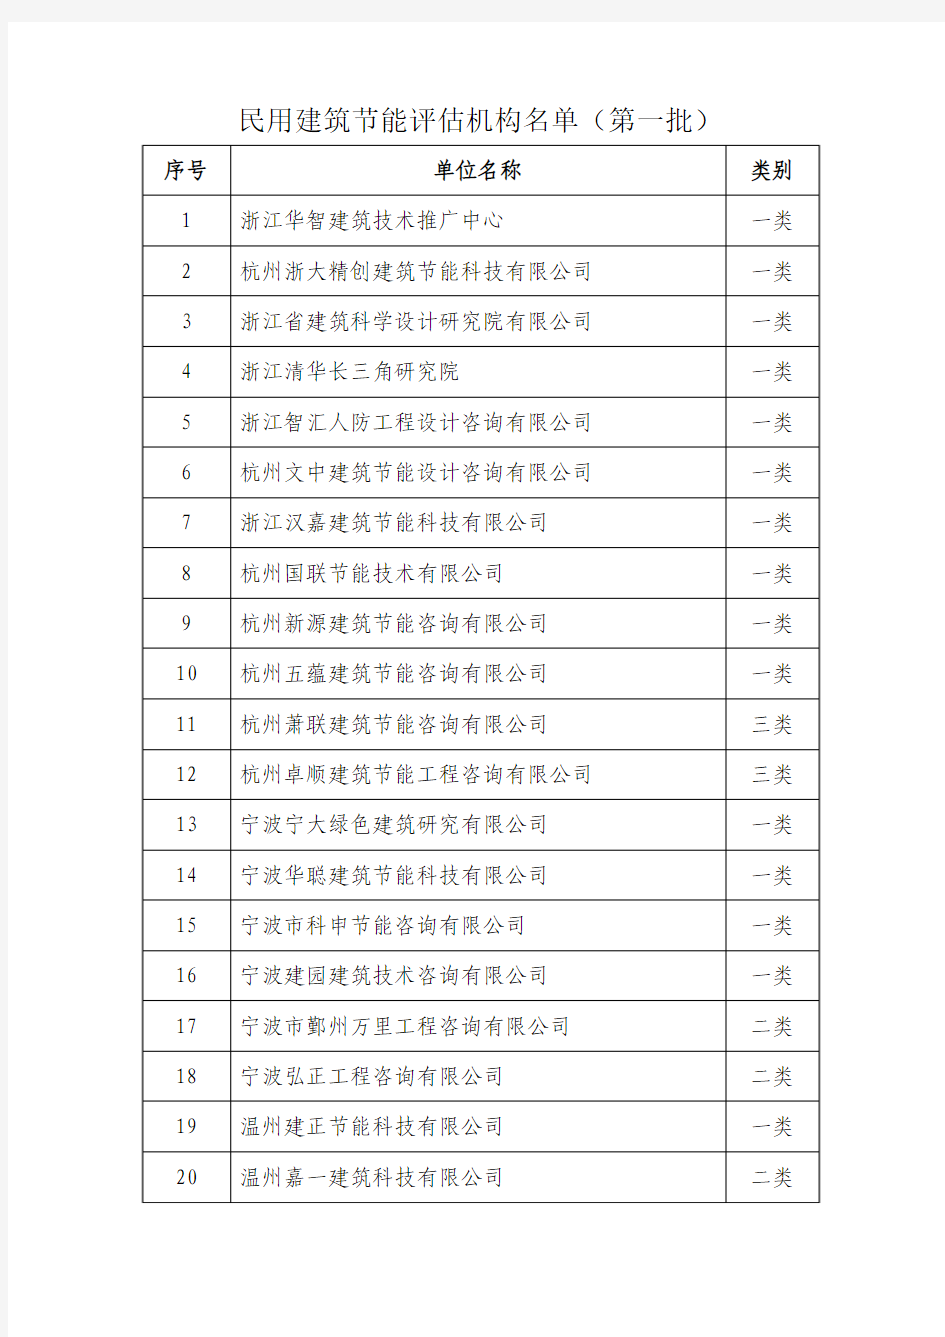 浙江省民用建筑节能评估机构名单(第一批)